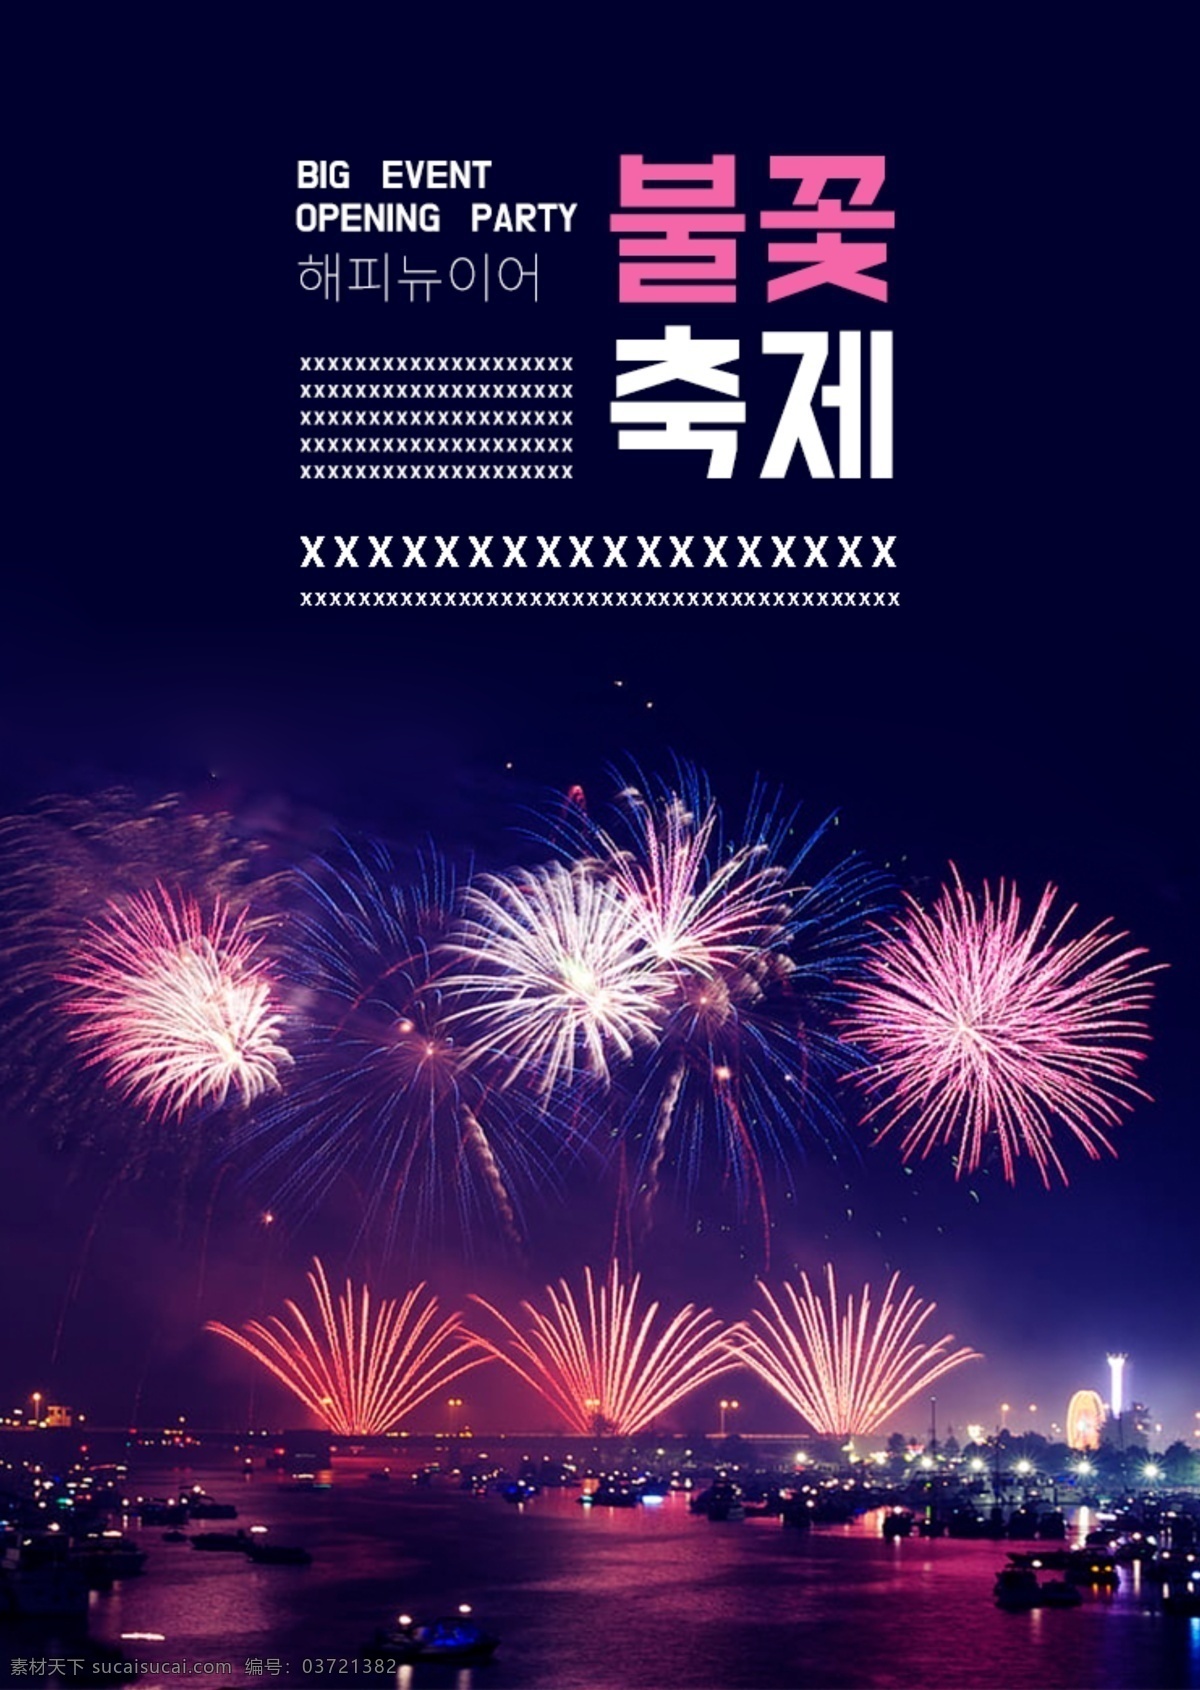 蓝色 烟花 夜空 庆祝 海报 谈谈关于 浪漫 烟花节 一年的猪 新年 2019 极简主义 节日庆典 庆典 主要事件